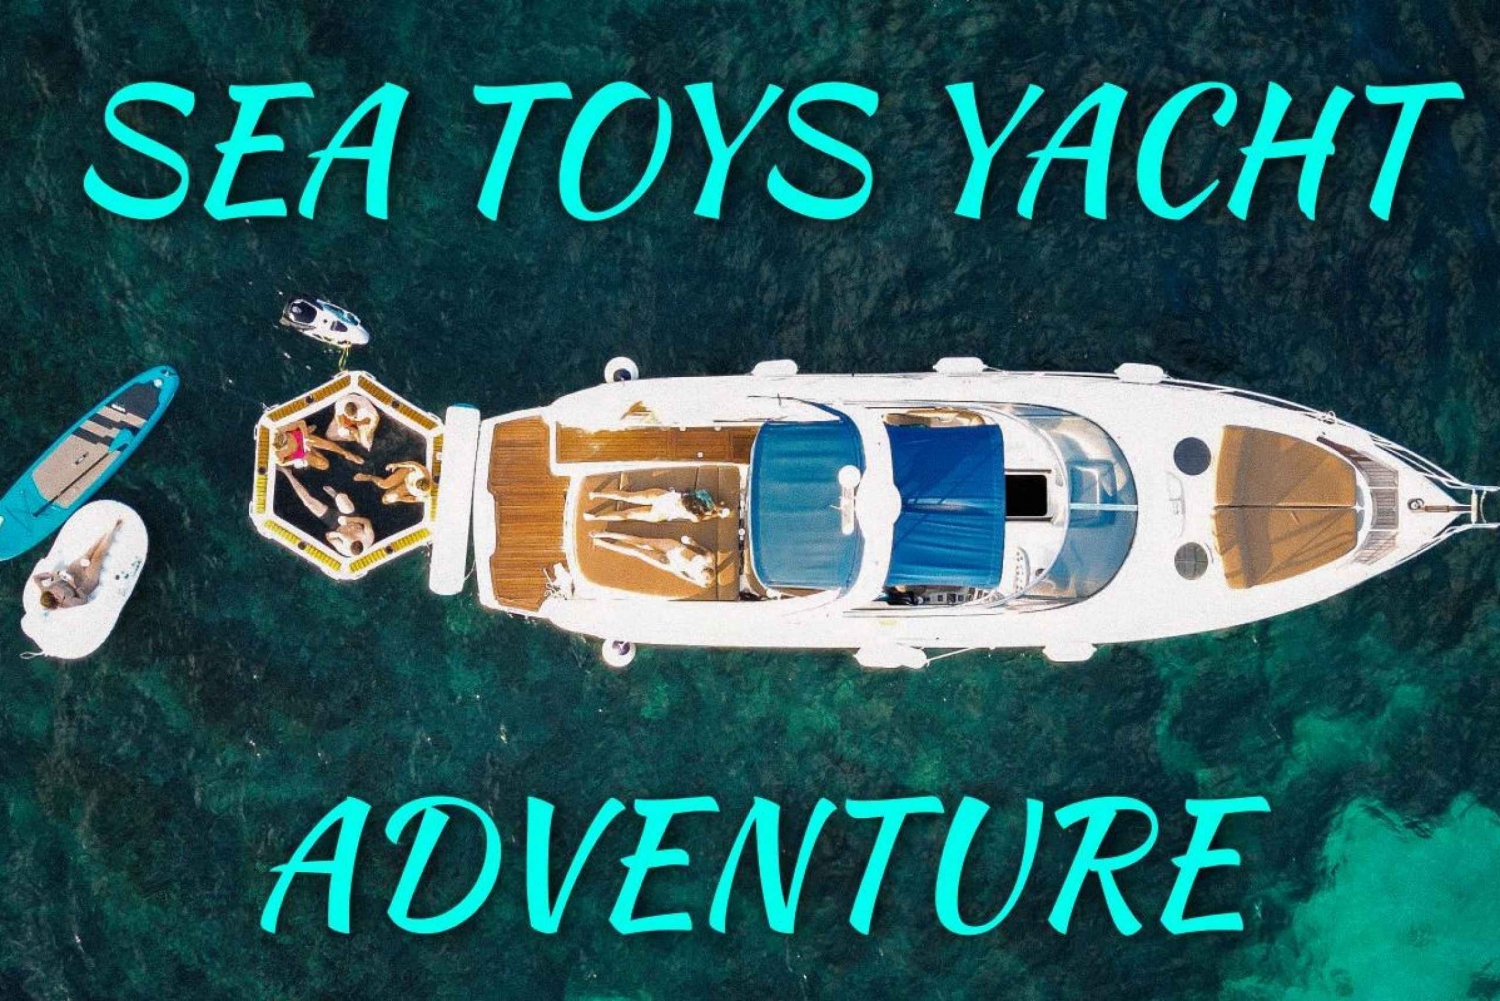 Palma: Biglietto Avventura Yacht Sea Toys incluso E-Foil ecc.